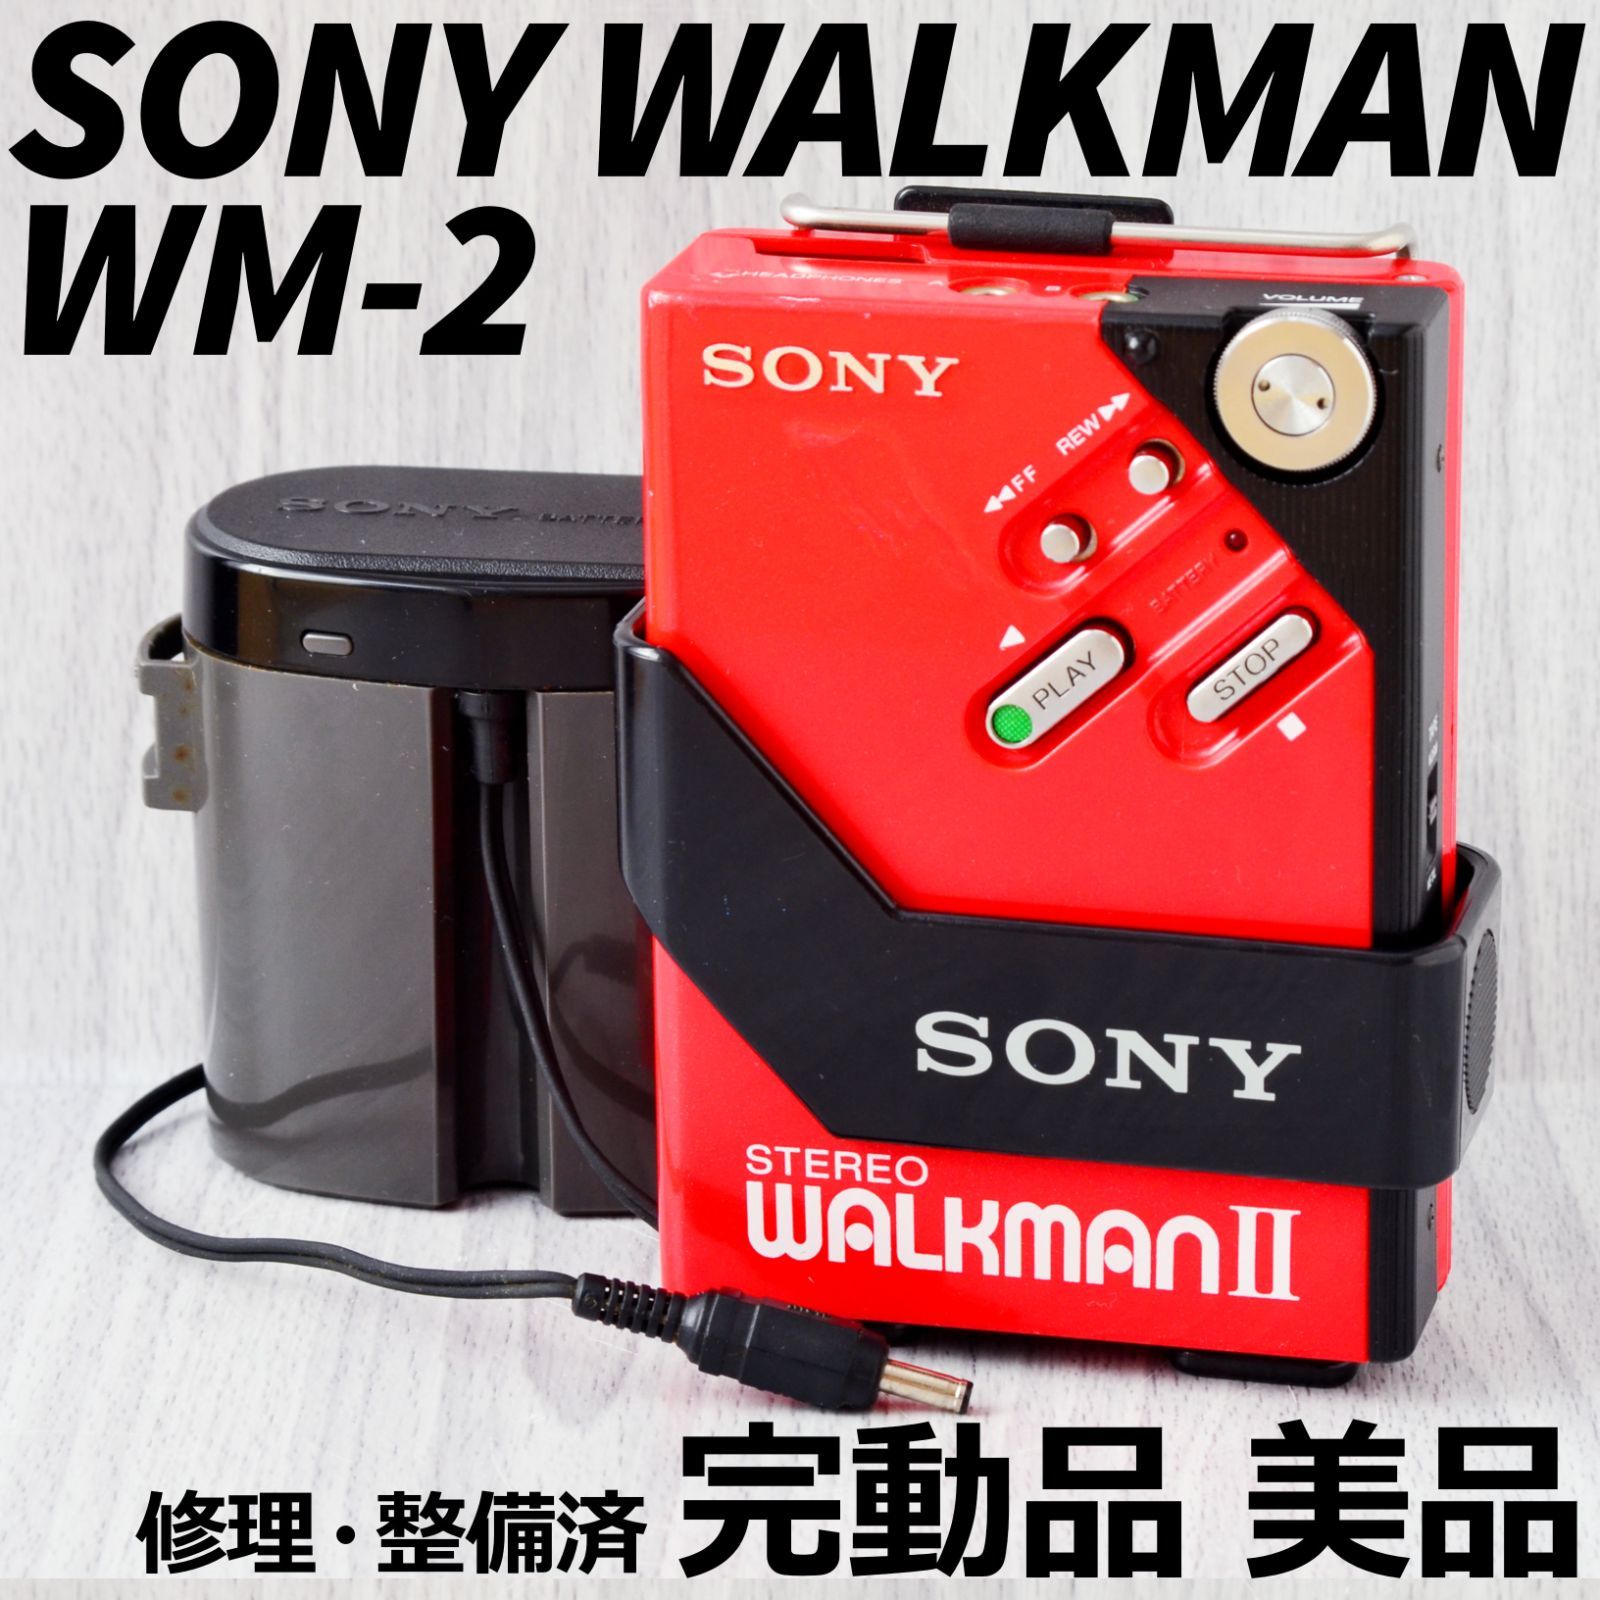 美品! SONY WALKMAN WM-2 赤 カセットウォークマン ケース付-